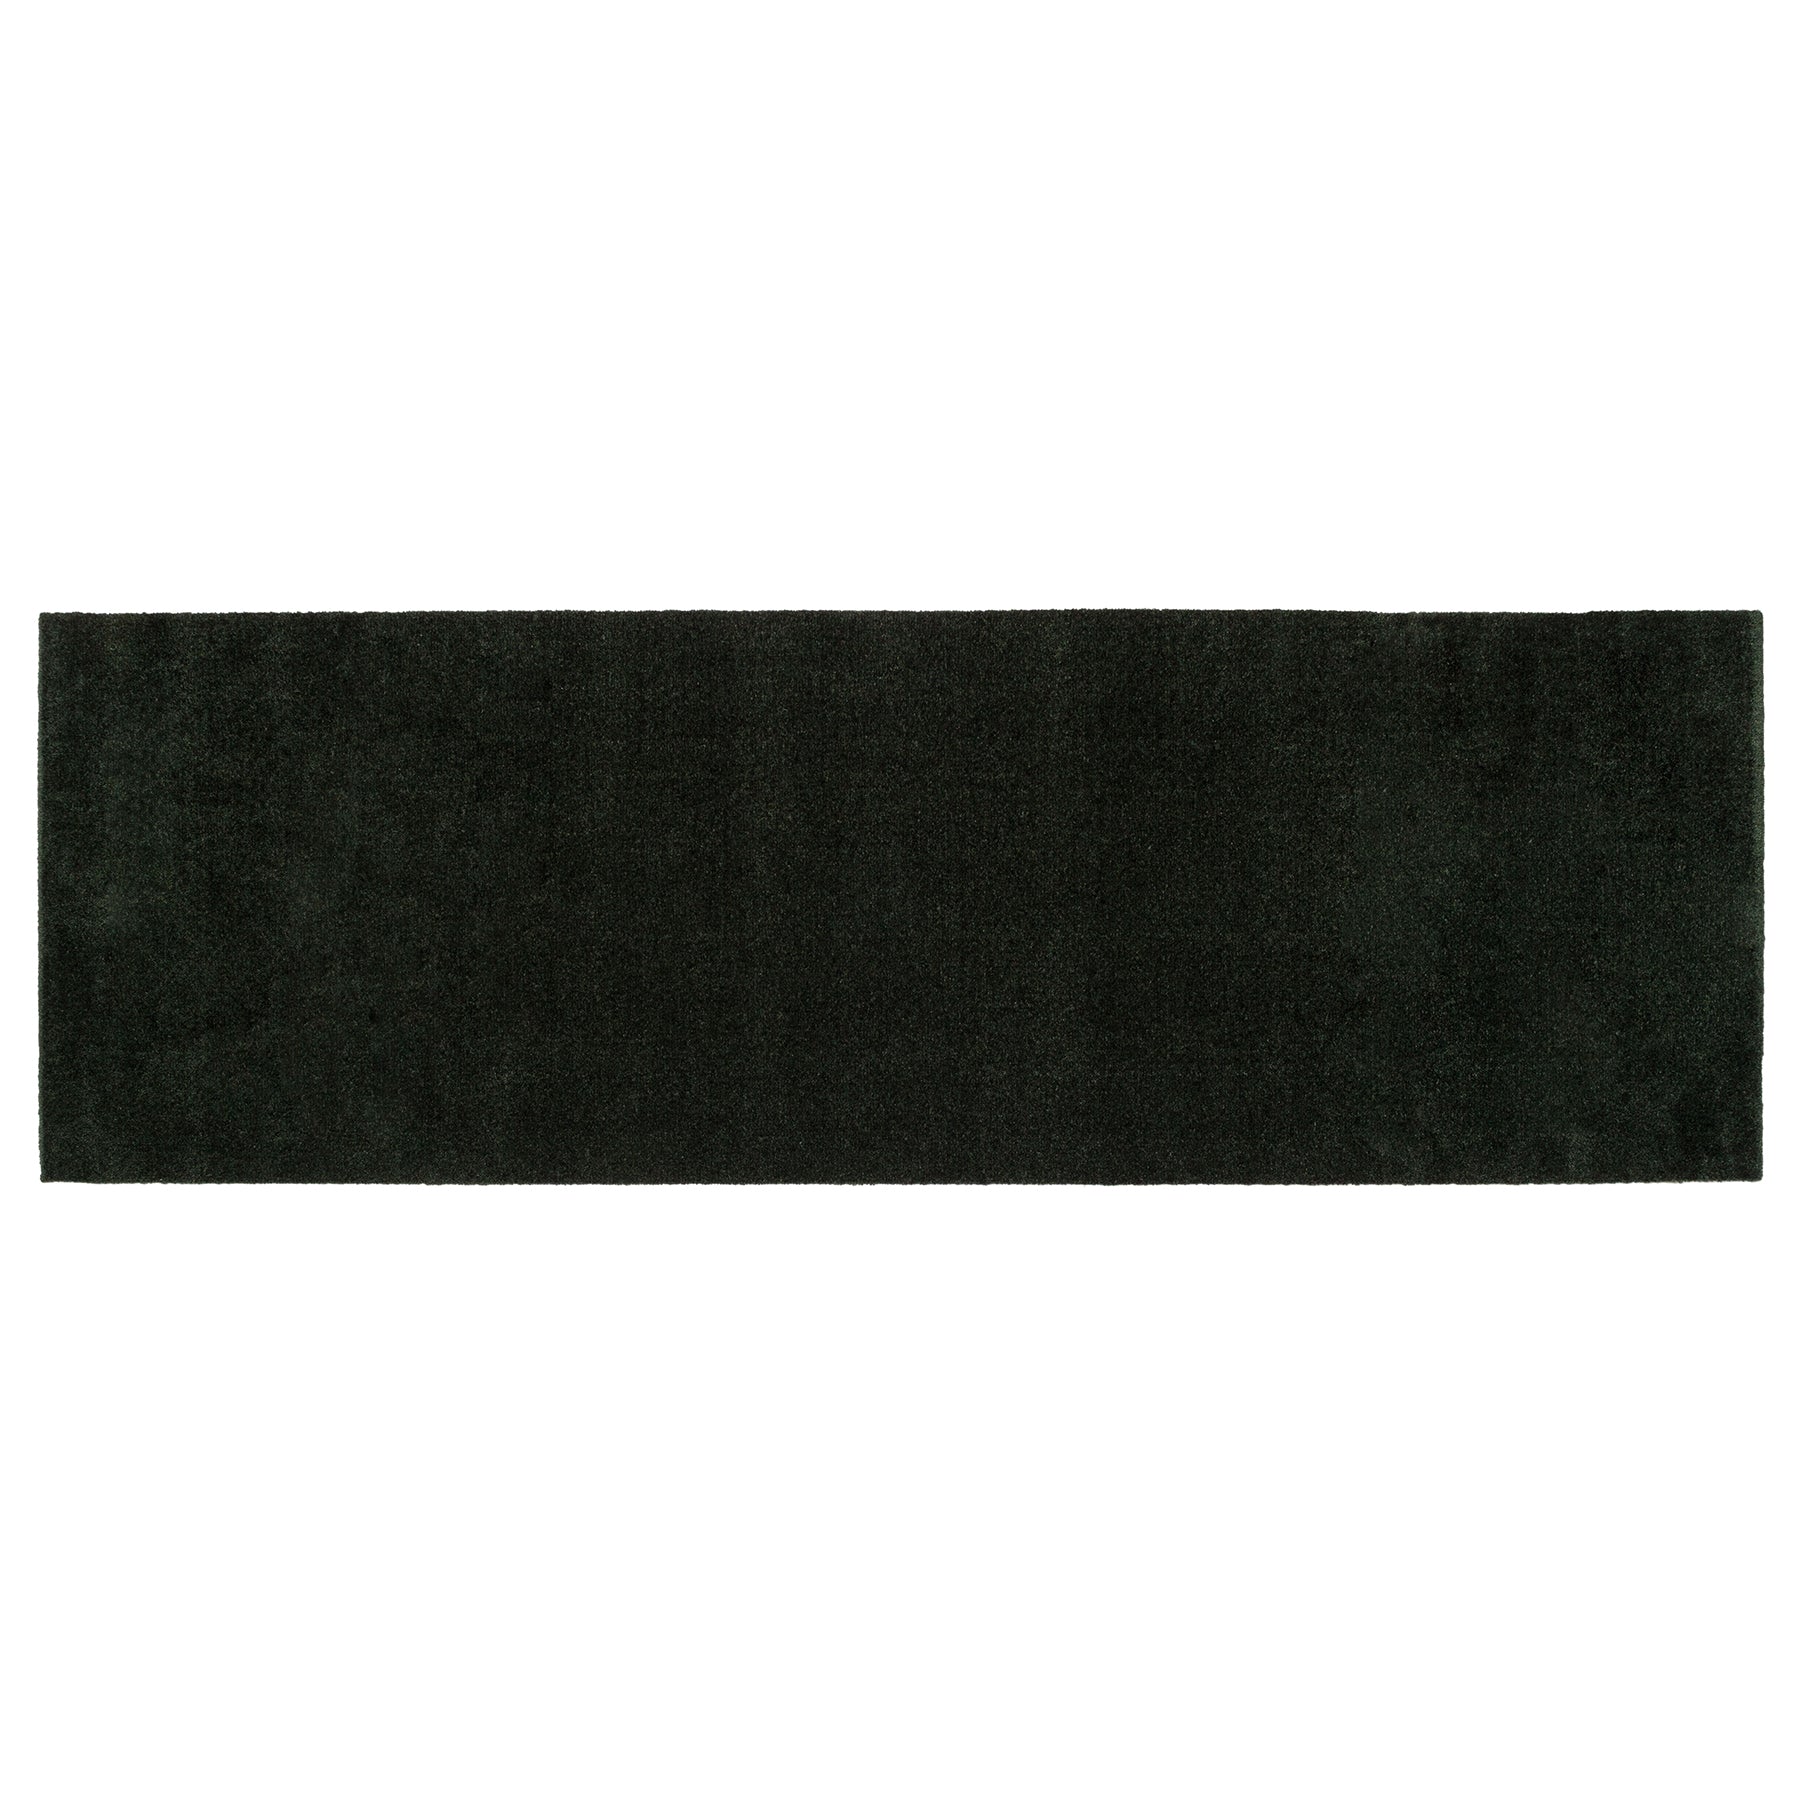 Blanket/tinha 67 x 200 cm - Cor de cor/verde escuro